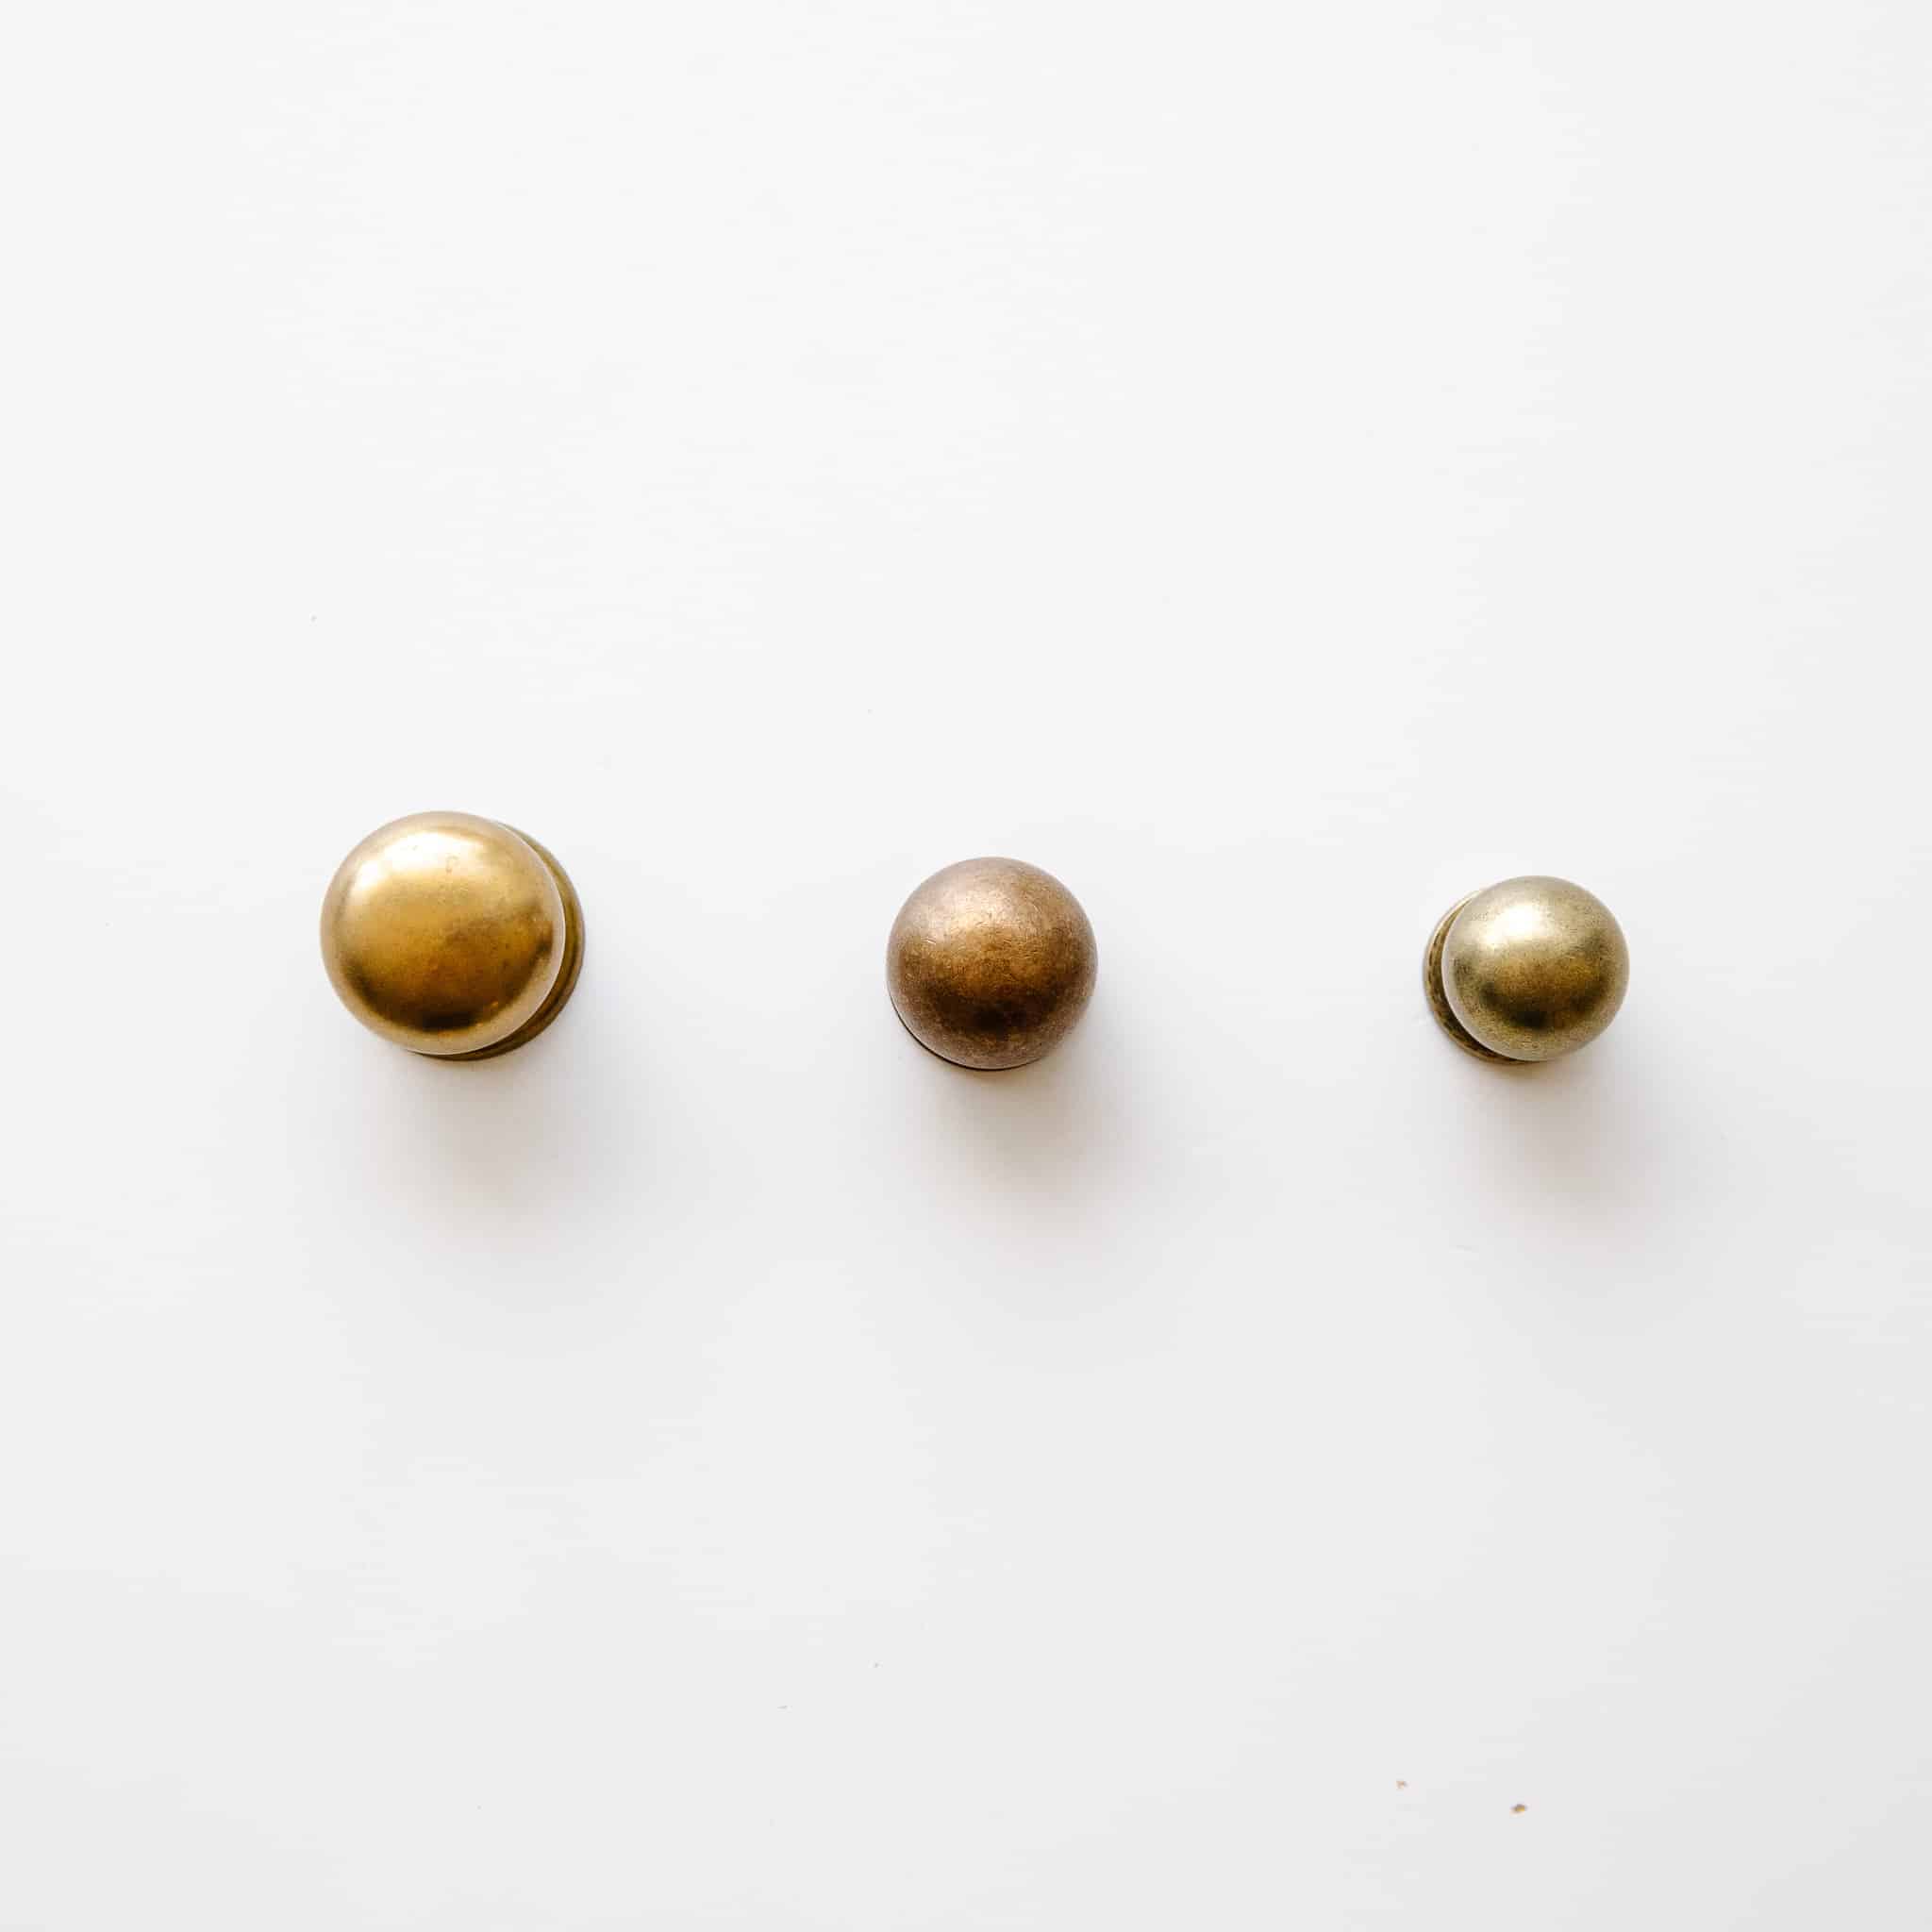 Brass cabinet knobs